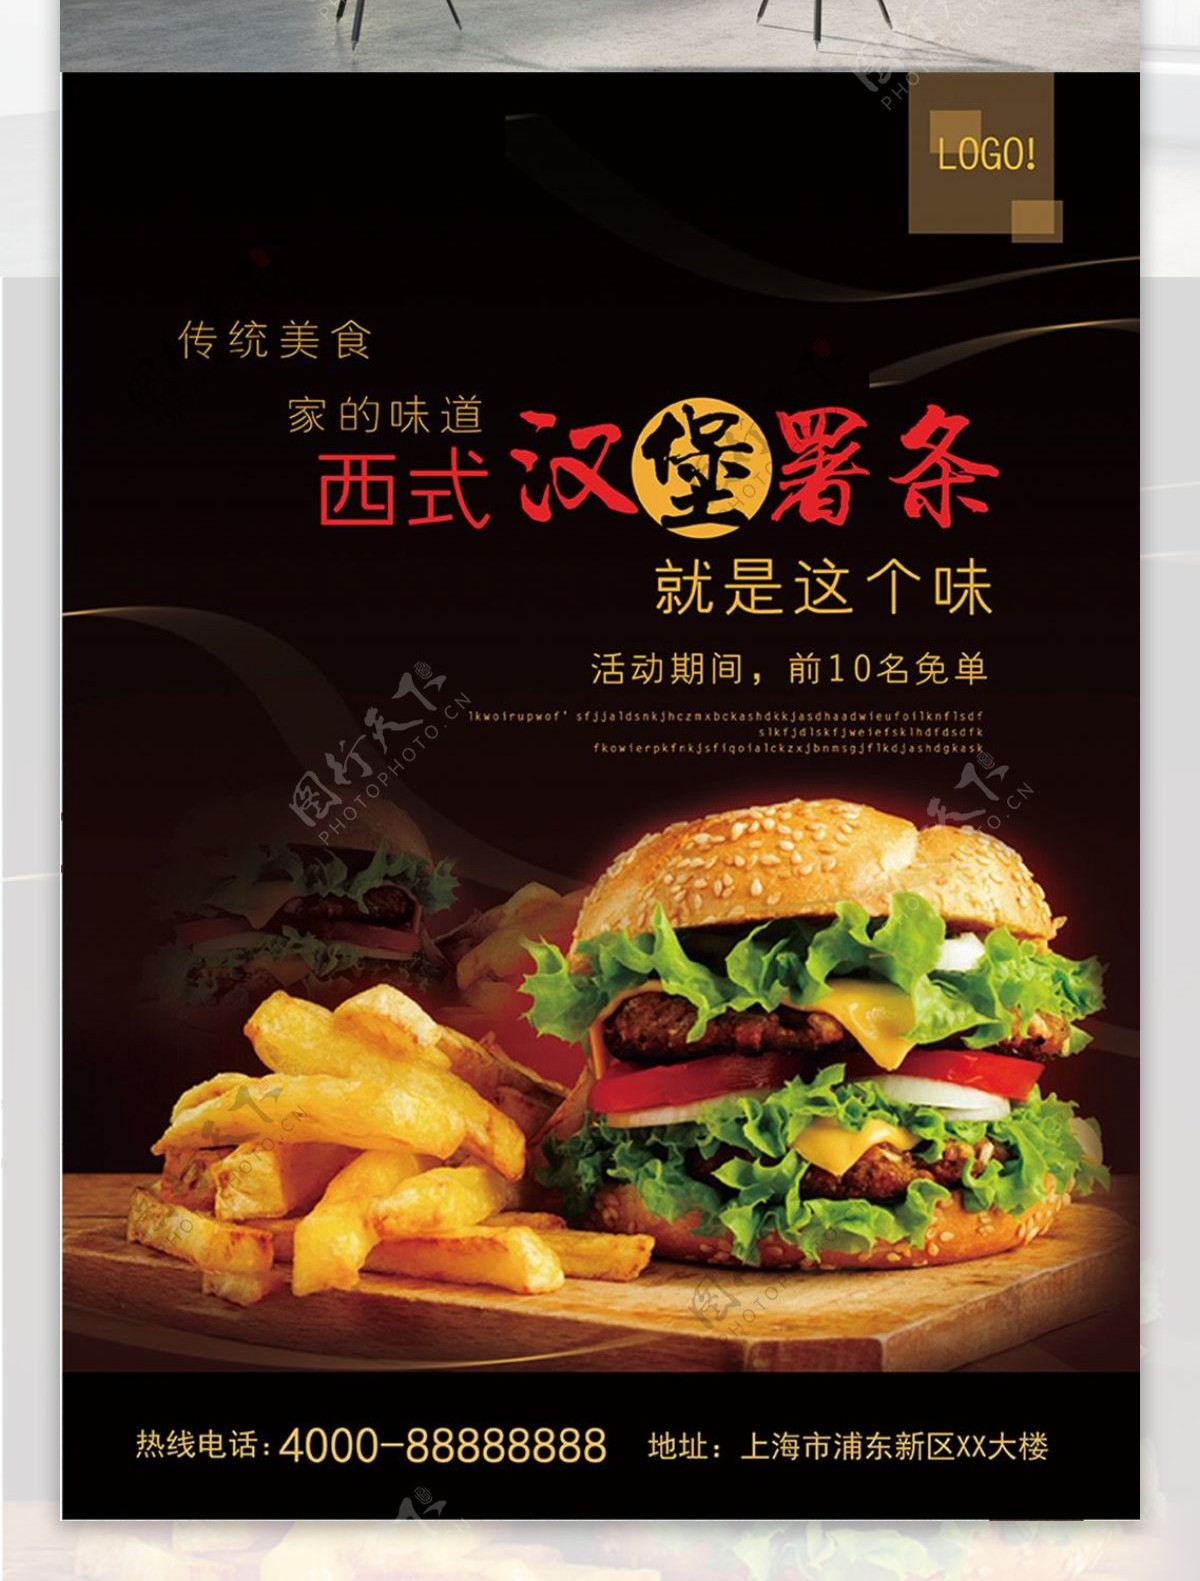 黑色大气西式汉堡薯条美食海报